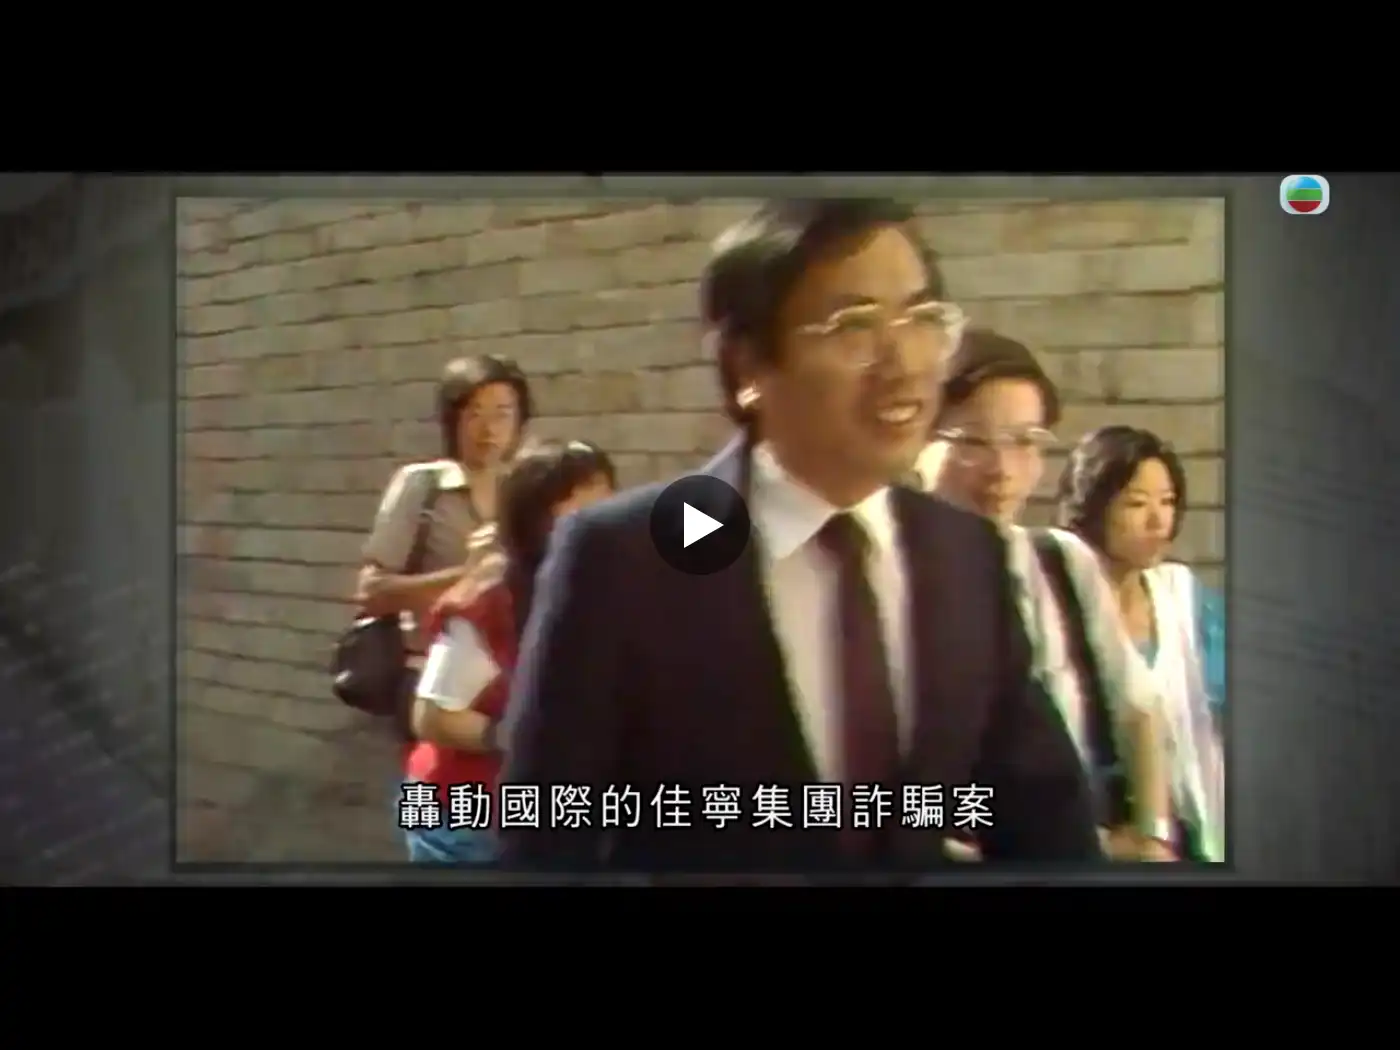 密码保护：佳寧集團案件 1980 ☑Gov ☑Hongkong,香港佳寧（佳寧集團）- 一個廣為香港人熟悉的名字，從1979至1983年的短短四年間，由崛起至幻滅。佳寧高層藉著行賄和詐騙手段，為集團製造盛極一時的假象，給香港股市帶來短暫的興奮。這個故事，始於1972年……締造 商業王國1972年，年約37歲的土木工程師從新加坡來港發展，加入了一地產發展商旗下的公司任項目經理。工程師很快便獲得該發展商的垂青及在經濟上提供支援，合資組成公司，經營業務。香港的地產市道於1976年漸趨蓬勃，工程師開始在新界購入地皮，蓄勢進軍物業市場。與此同時，他開設佳寧滅蟲公司，「佳寧」這個公司標誌首度面世。直至1977年底，他成立佳寧集團有限公司（佳寧／佳寧集團），成為集團主席（佳寧主席），直接控制多間由自己開設或收購的公司，包括首間上市公司 – 佳寧投資有限公司。自此，他不斷拓展業務，遍及交通、航運、旅遊、保險、房地產、金融、飲食、酒店甚至娛樂事業﹔業務版圖從香港伸延至台灣、新加坡、馬來西亞、泰國、菲律賓、日本、澳洲、新西蘭及美國。佳寧成為一個擁有二百多間公司的多元化集團。收購 金門大廈佳寧集團不斷壯大，股價飆升，受到股民熱烈追捧。不過，真正令佳寧主席在地產界聲名大噪的是1980年的金門事件。1980年1月，佳寧主席透過一間自己佔有百分之七十五股權的公司，以九億九千八百萬港元購入位於中環的金門大廈；數月後，即宣稱以十六億八千萬元成功將它轉售予另一財團，消息轟動地產及金融界。報章引述佳寧主席當時聲稱收購行動所需的龐大資金是來自佳寧及一直支持他的幕後財團，毋須向銀行借貸。差不多在同一時間，佳寧另以約三億港元現金收購一上市公司，稍後易名為佳寧投資有限公司（佳寧投資），成為佳寧第一間上市公司。這兩宗交易一方面使佳寧在香港物業市場備受矚目，另方面則顯示它具備雄厚的資本。1980年11月，佳寧股價曾一度升至每股十七元九角的歷史高位。辛勞的 回報在審結案件和作出判刑之後，高等法院法官特別向調查人員作出讚許。他說：「這宗案件的複雜程度在本港的司法審訊中相信是史無前例。我特別希望表揚一群廉署調查人員為偵破這宗龐大案件所付出的努力，以及他們抽絲剝繭偵查每項細節的專業態度……對於他們的調查技巧和專業精神，以及在這宗冗長訴訟中表現出的幹勁，我實在深表欽佩……歷年來這宗案件豈止一波三折，但調查人員仍能以無比耐性及堅毅意志衝破重重困阻，香港每一位市民都應該感激廉署的努力……」此外，法官更點名讚揚賈樂施和盧敬榮，對他們全情投入工作的專業態度作出高度評價。十位長時間參與調查此案的專案小組成員，憑著他們堅毅不屈的精神和卓越的調查技巧，獲廉政公署頒發嘉許狀；賈樂施和盧敬榮更獲港督頒發嘉許狀（時為一九九四年），以表揚他們鍥而不捨的精神和專業的工作態度。➤廉政公署官网专题页详细记录破解此案（简称：佳宁诈骗案或佳宁集团诈骗案）的重要历程，位列“执法重大案件”、“金融保险及上市公司”类案件下的最早一例重案。➤2024.1.1 ☑媒体报道（香港媒体） 刚于12月30日公映的港产片巨制《金手指》，重温40年前轰动一时的佳宁案，一个「商业王国」、一场泡沫爆破、带来「致命」的经济打击。除了致命，也是致命，更心寒的是与其有密切关连的多宗命案，「大马核数师之死」、「律师沉尸泳池」、「廉署主任自杀」及「法官车祸」。